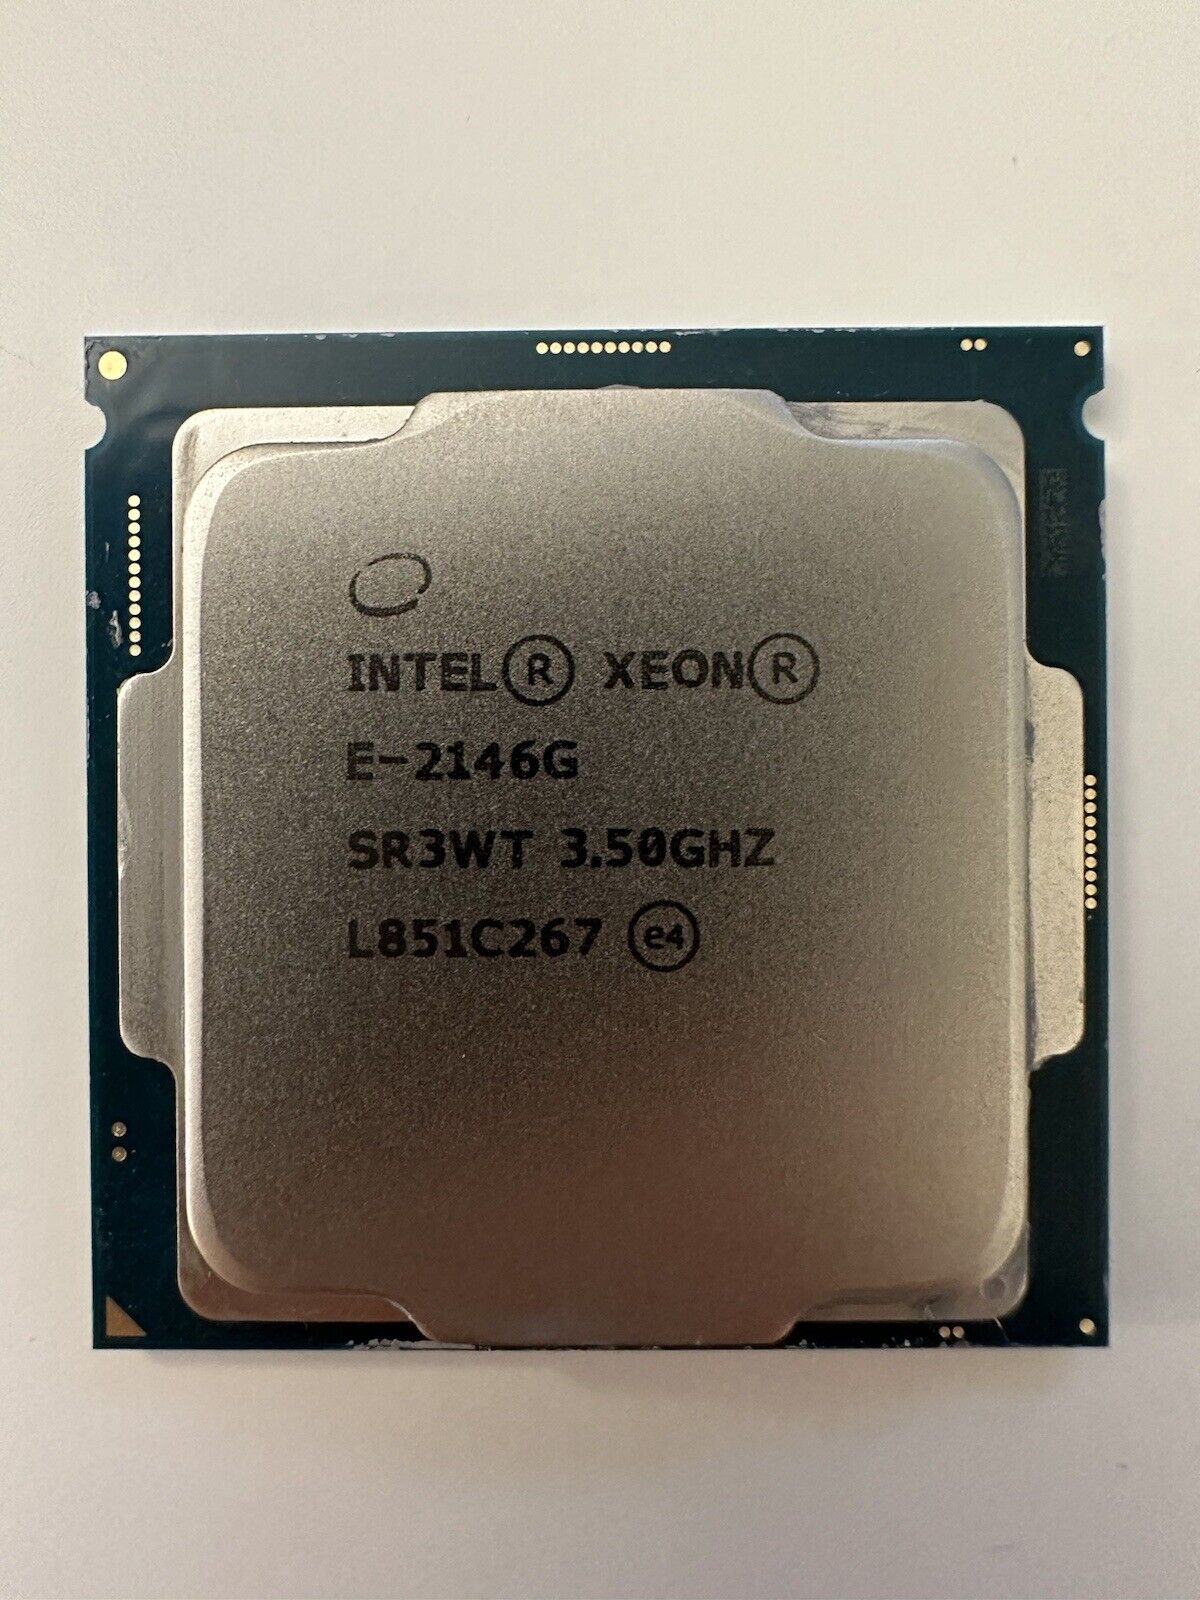 Intel Xeon E-2146G E2146G SR3WT 3.50GHz L851C267 e4 14nm 6-Cores Turbo 4.50GHz